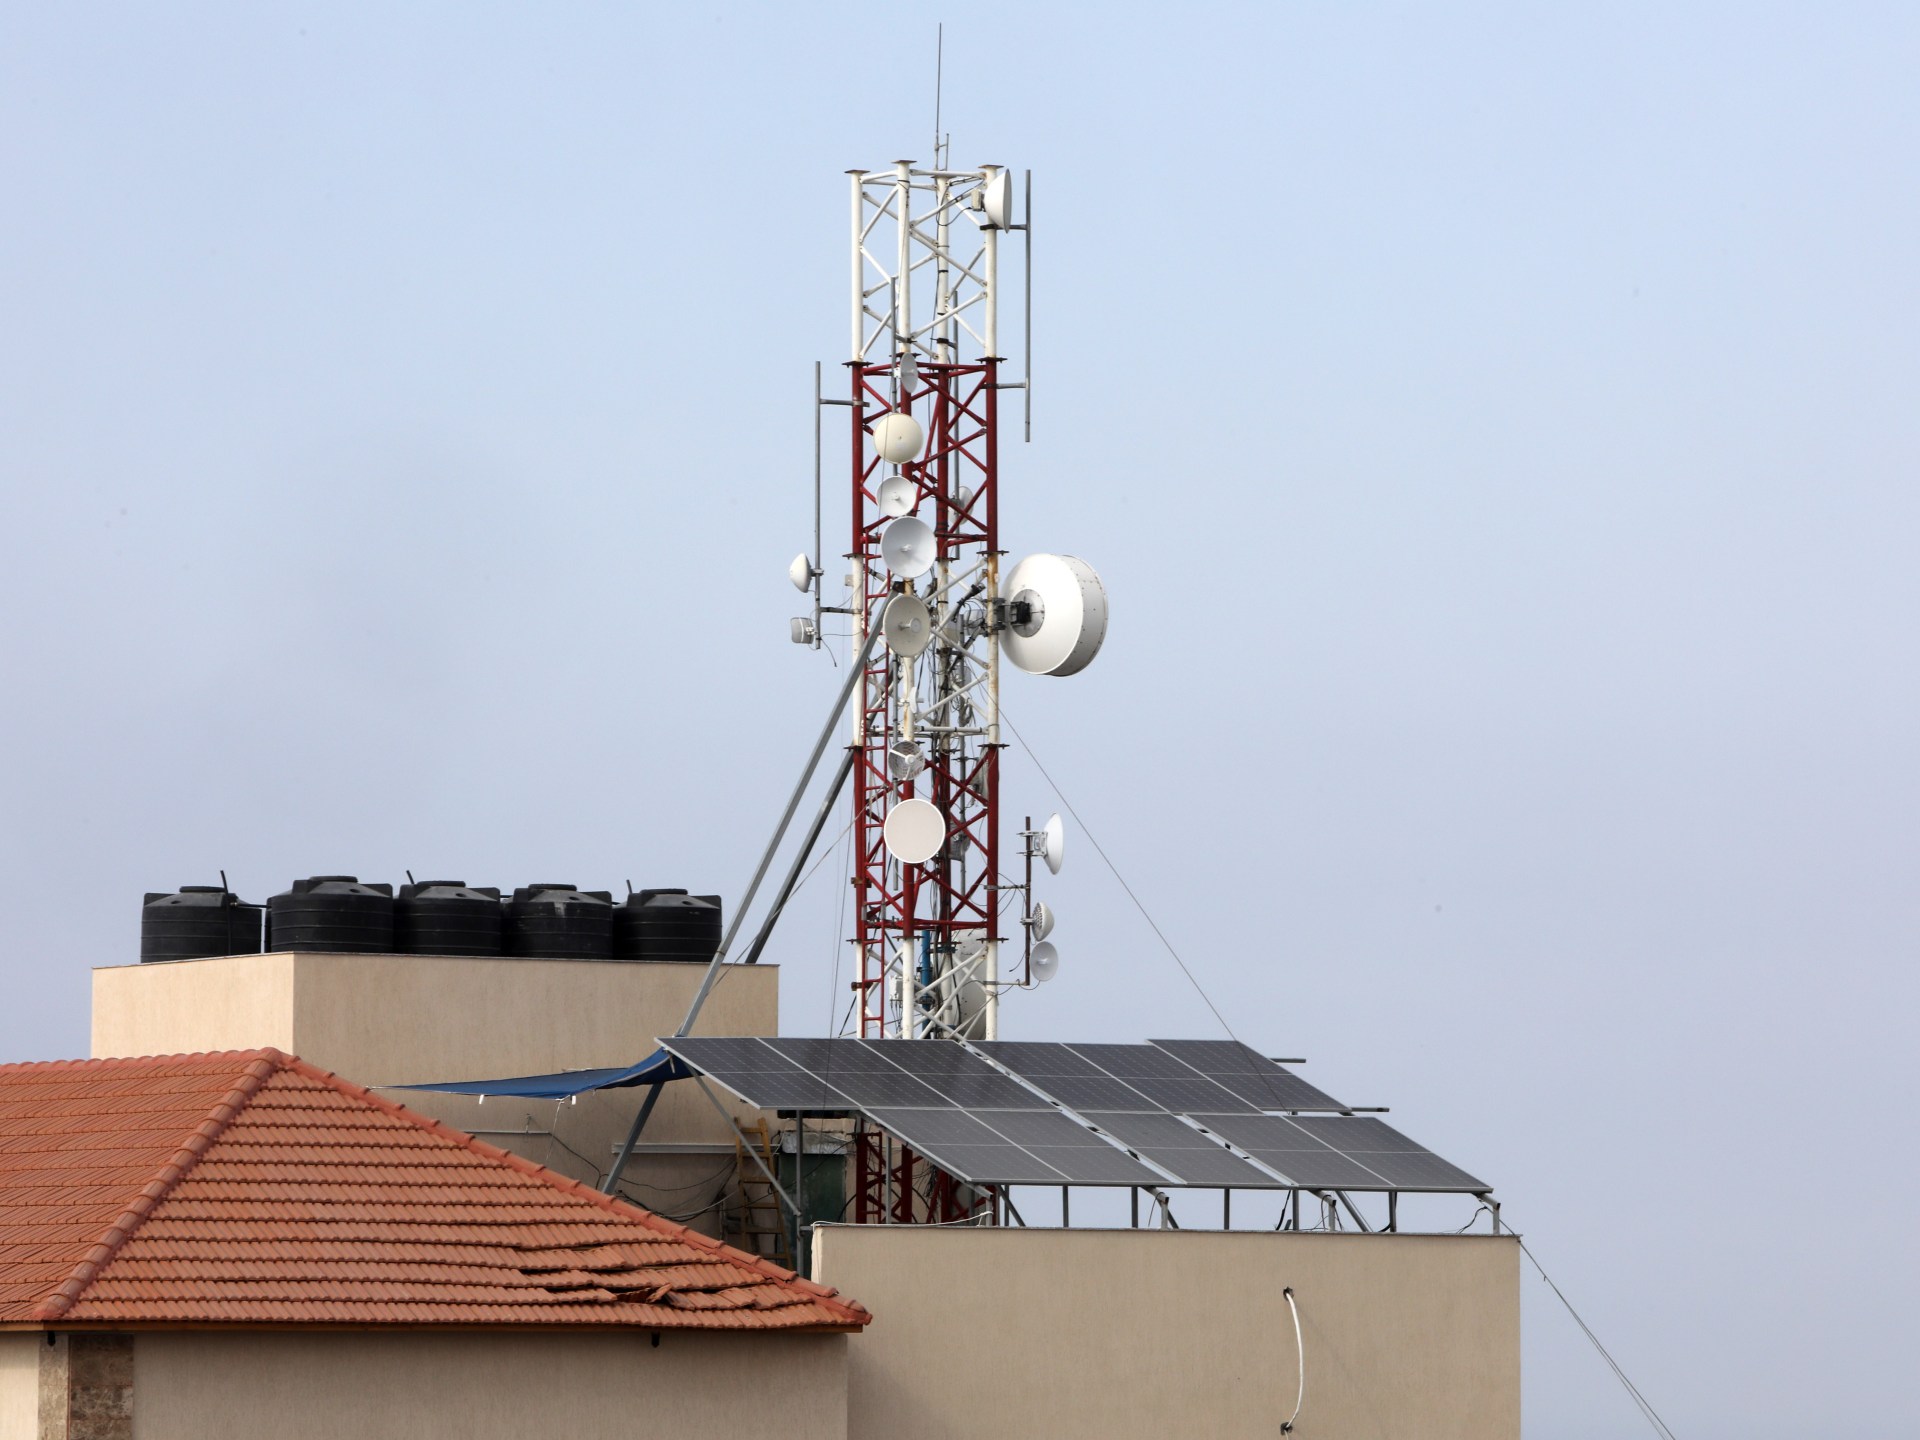 انقطاع الاتصال والإنترنت بمناطق متفرقة شمالي غزة | أخبار – البوكس نيوز